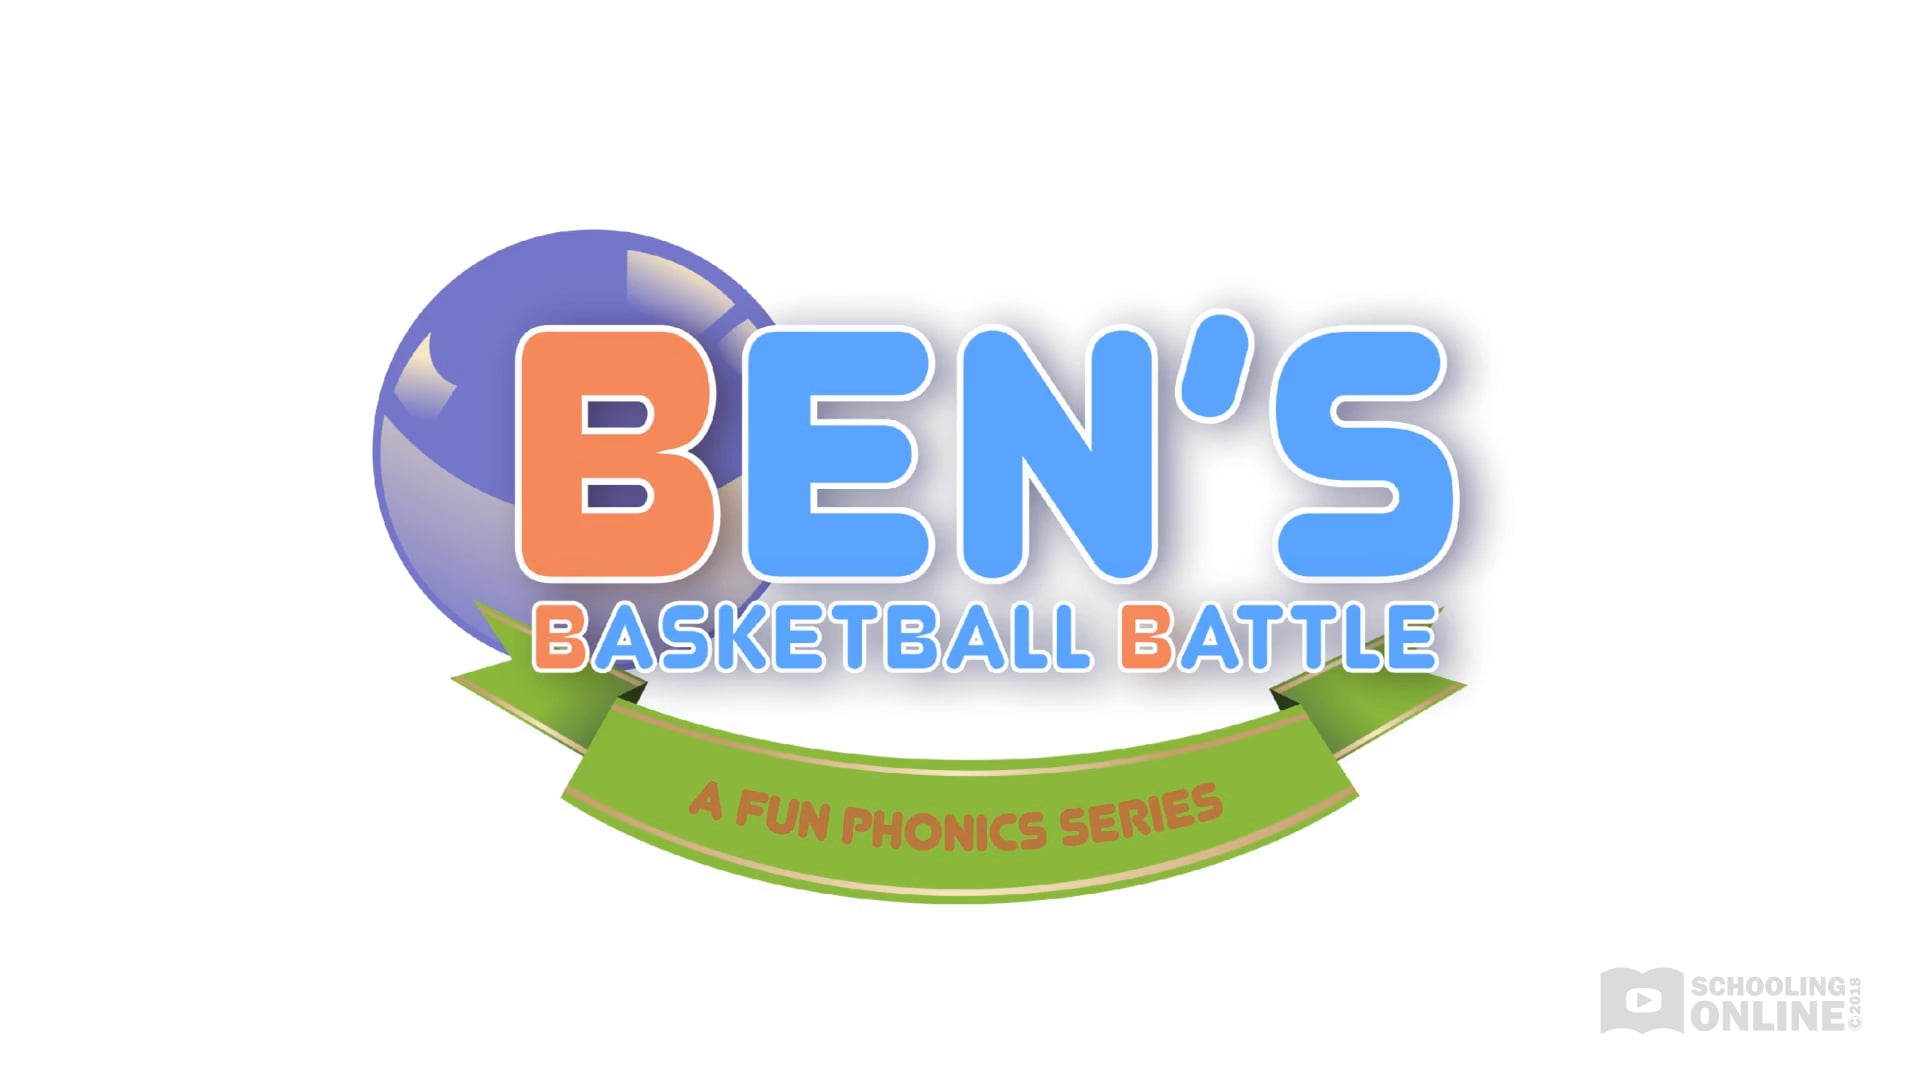 Ben's Basketball Battle